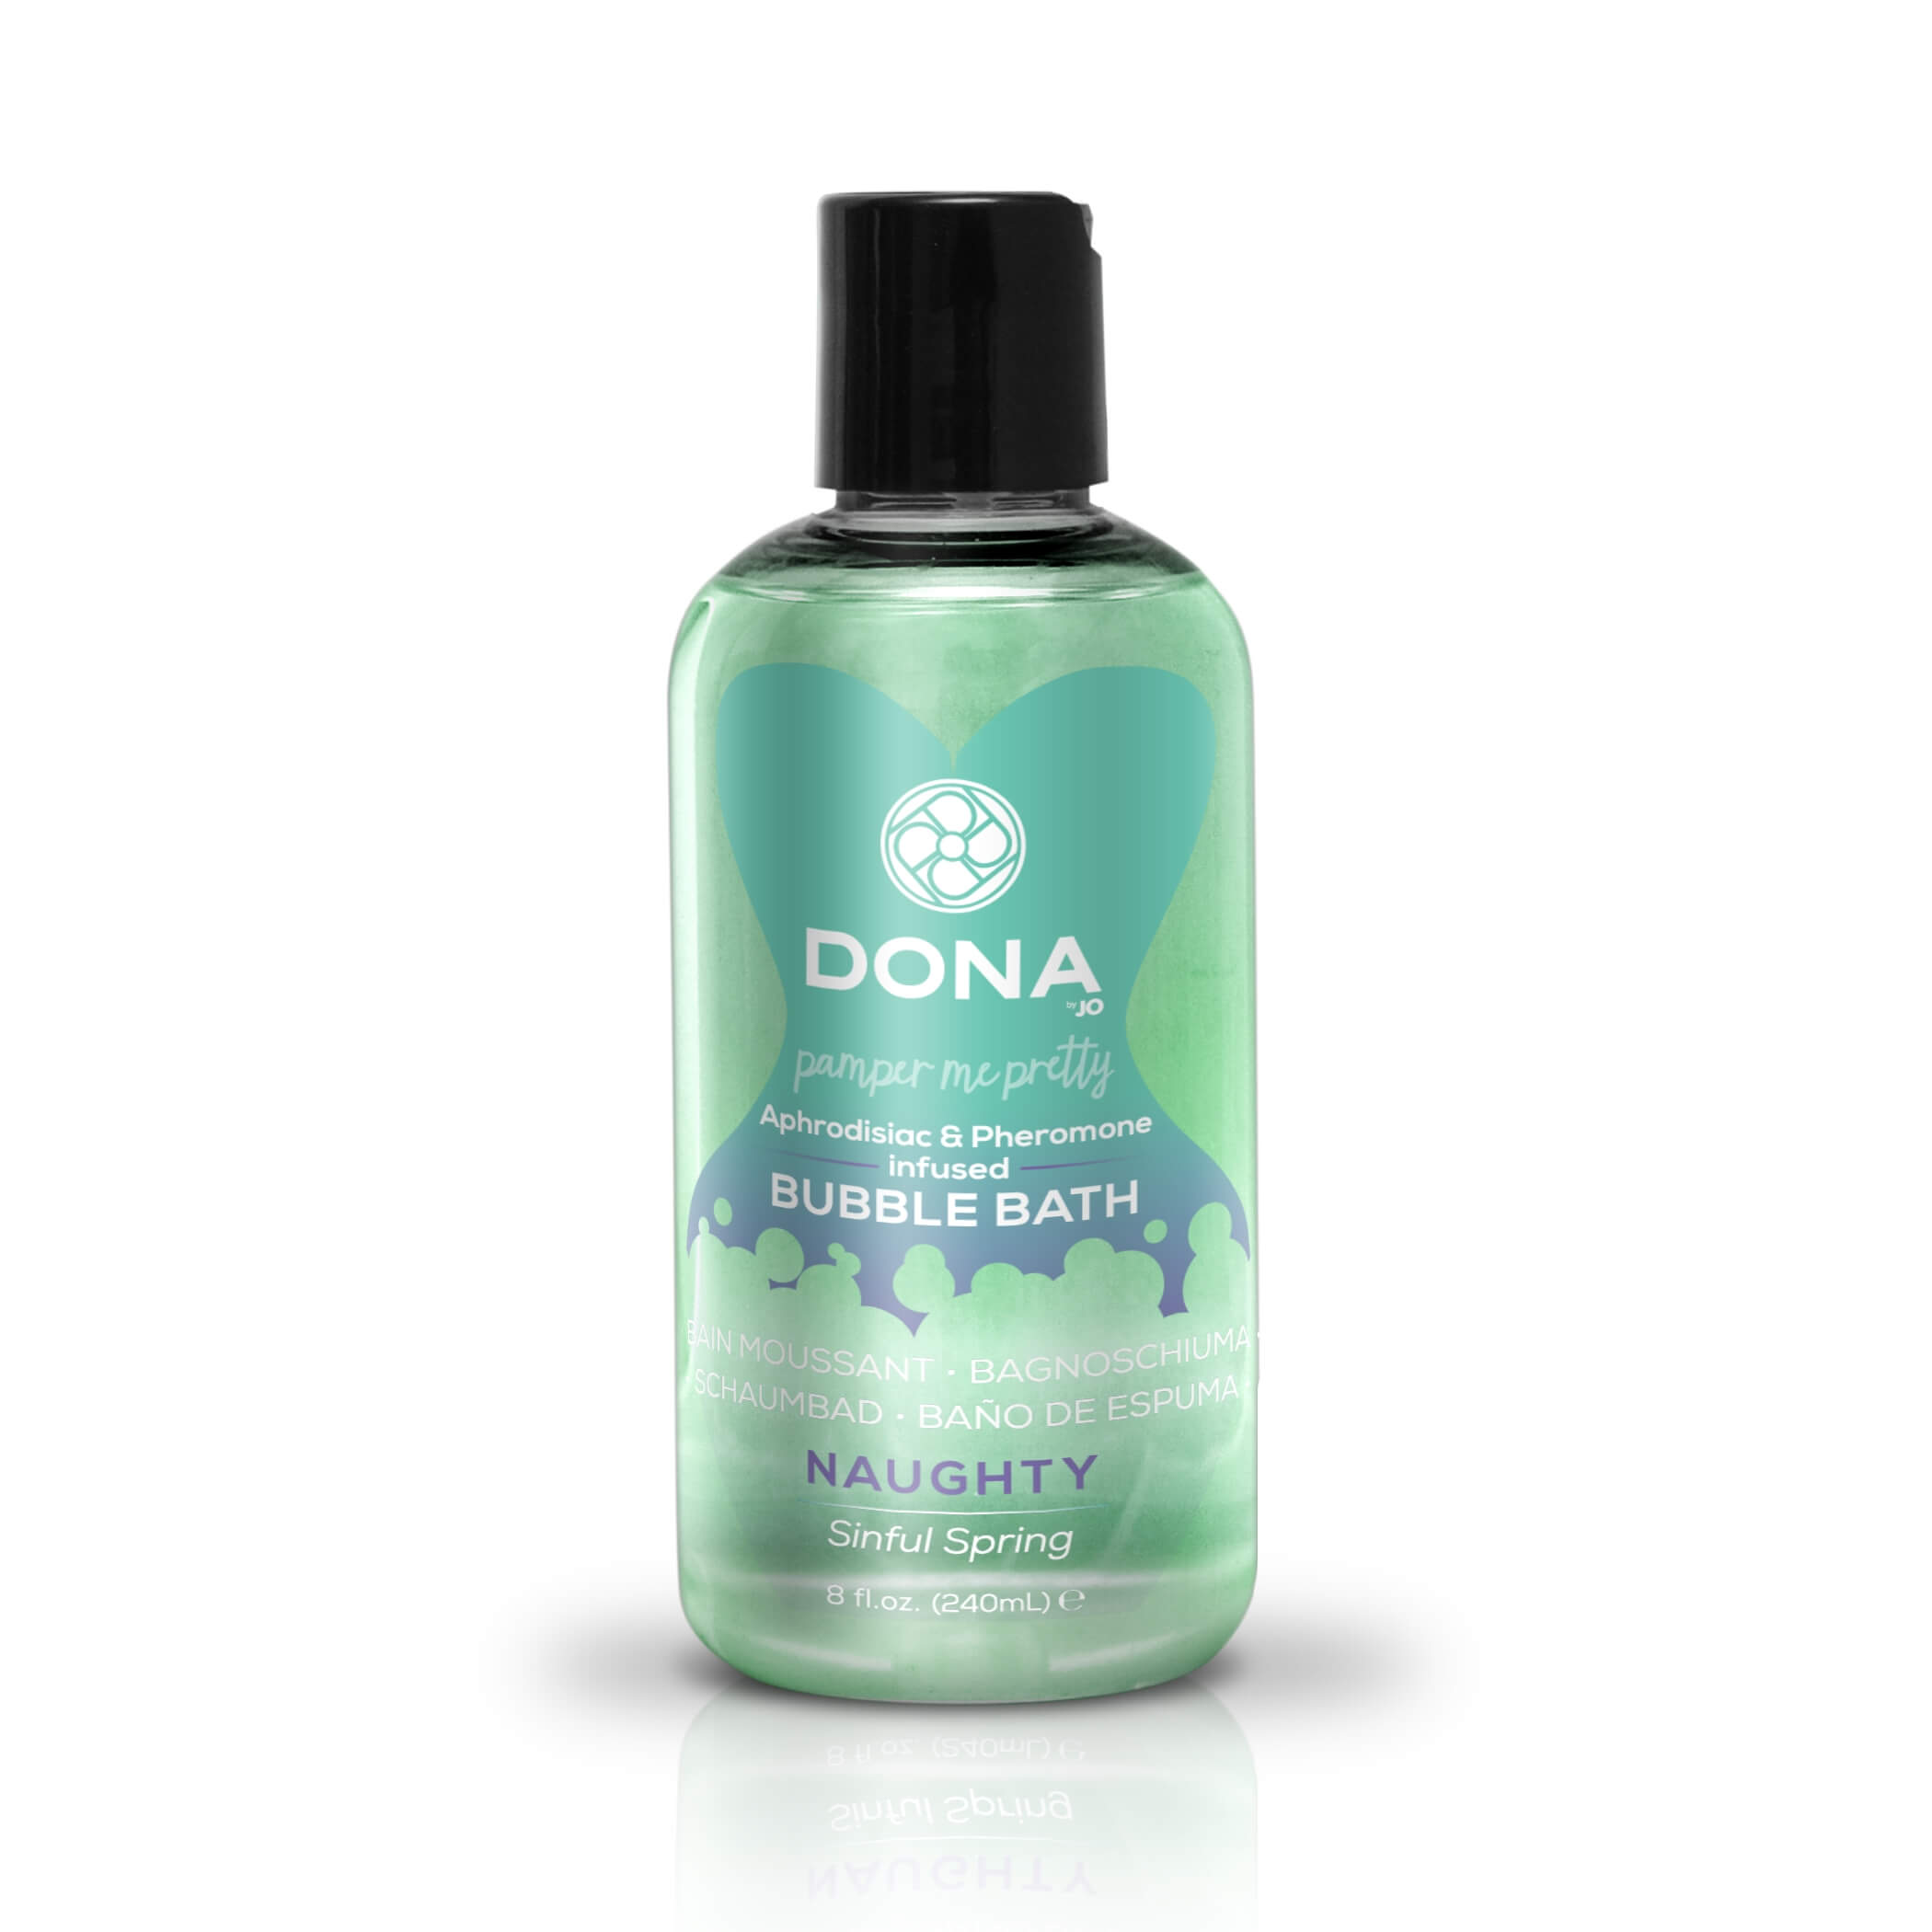 Dona Bubble Bath Sinful Spring - feromonos habfürdő (250 ml) Pheromon, parfüm, vágykeltő kép